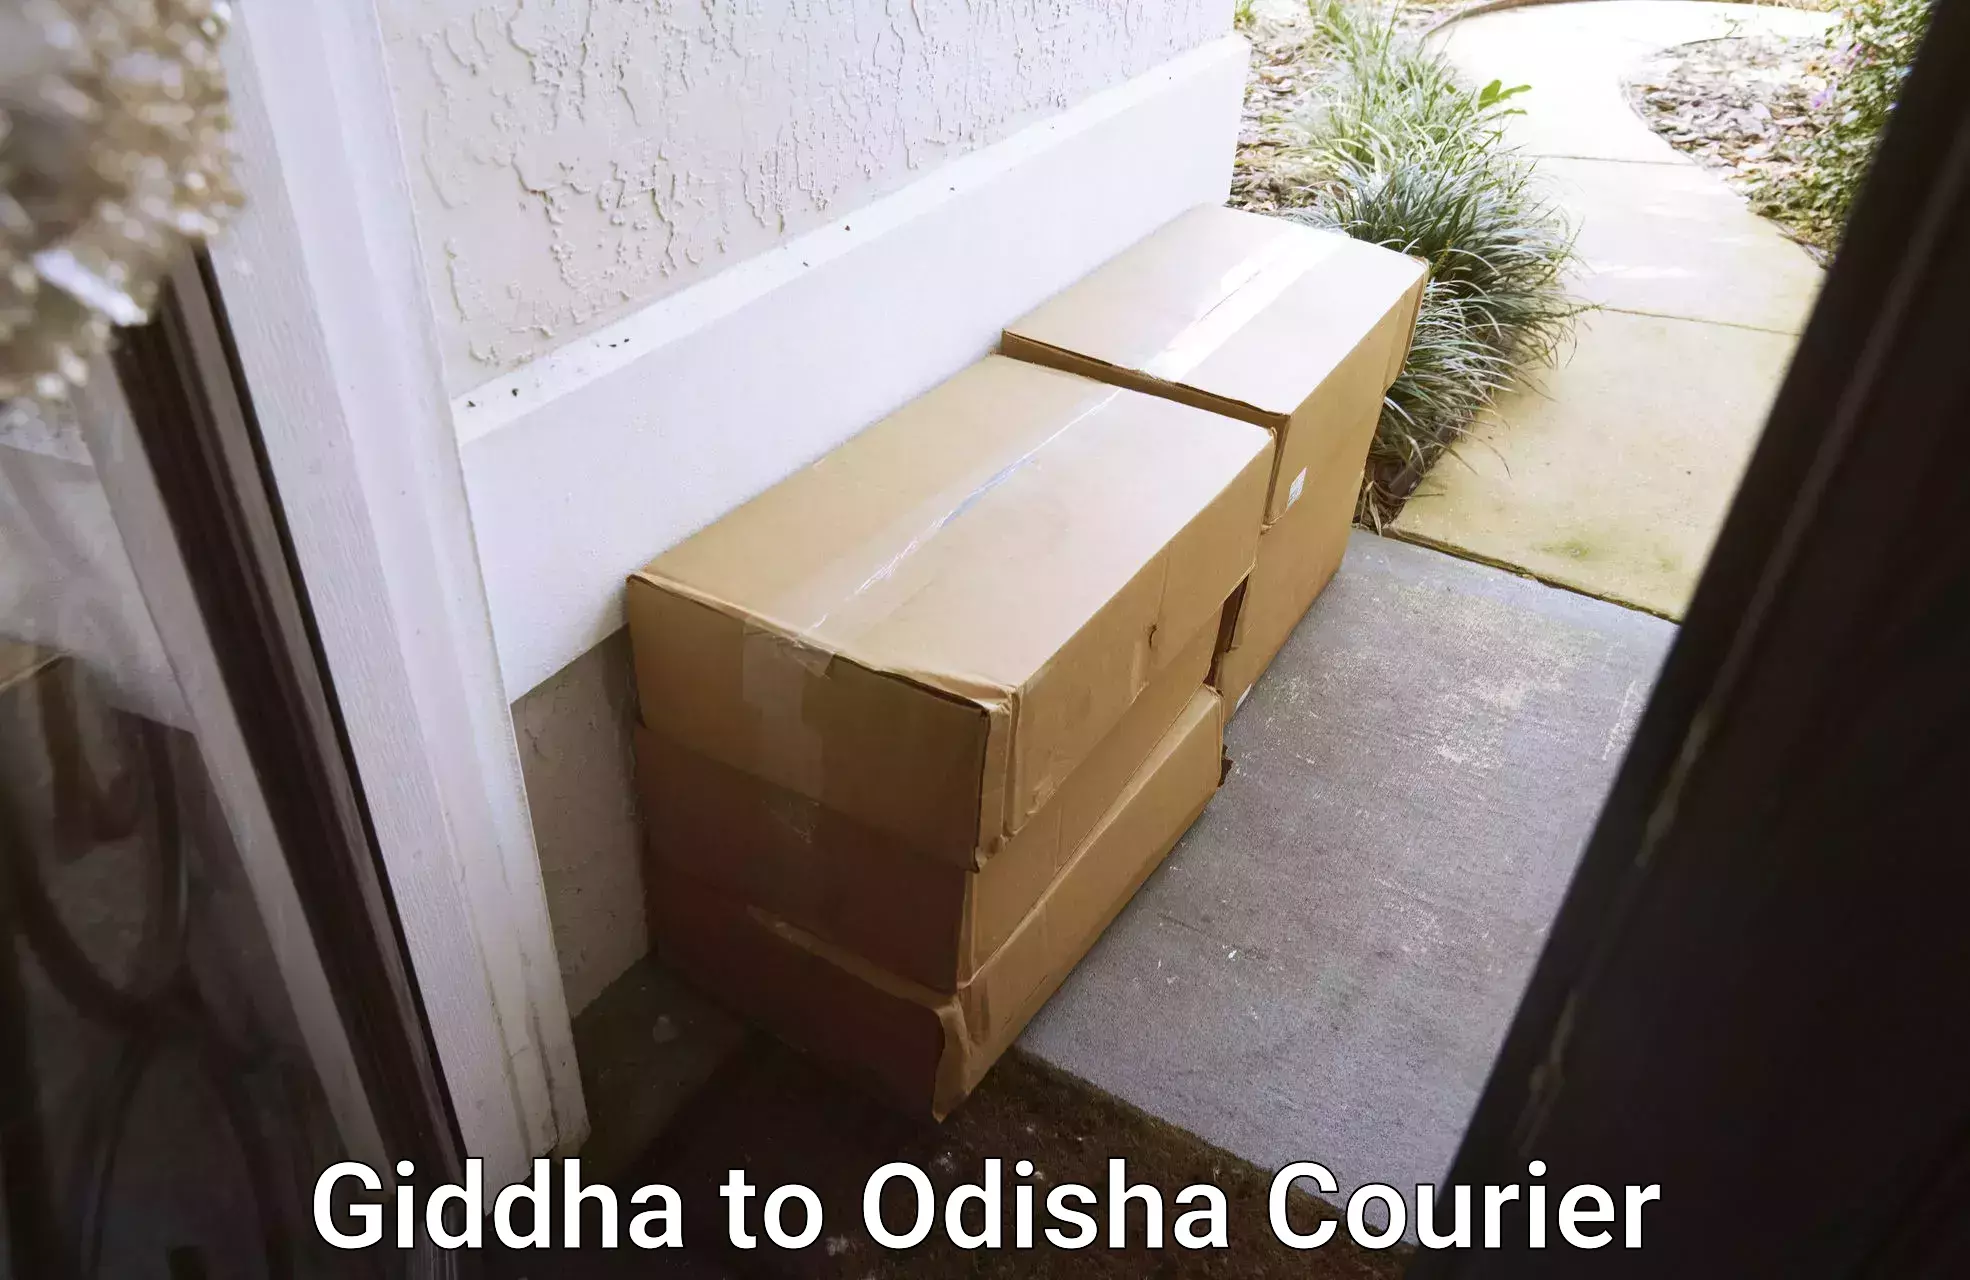 Nationwide furniture transport Giddha to Puranakatak